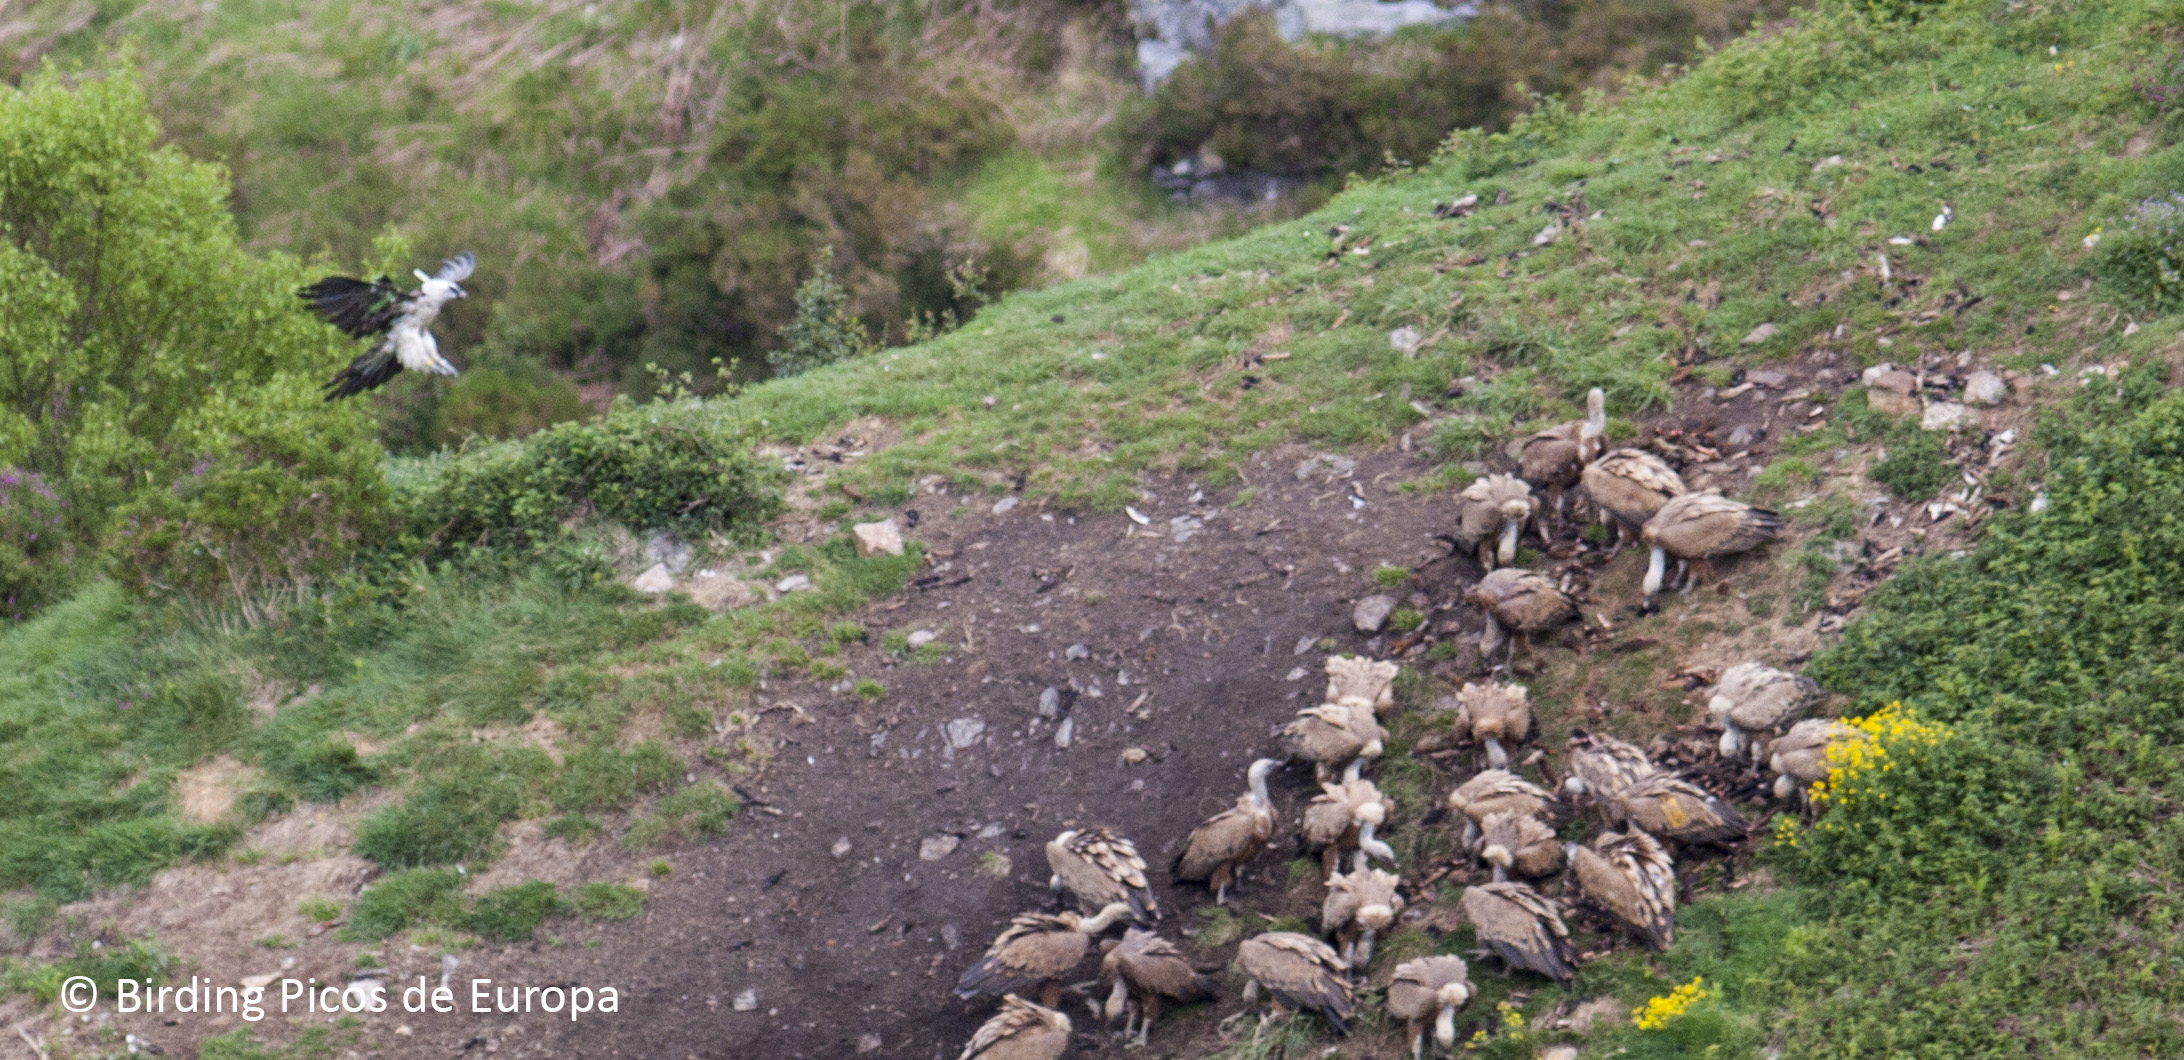 The Feeding Site for Scavenger Birds in Picos de Europa National Park